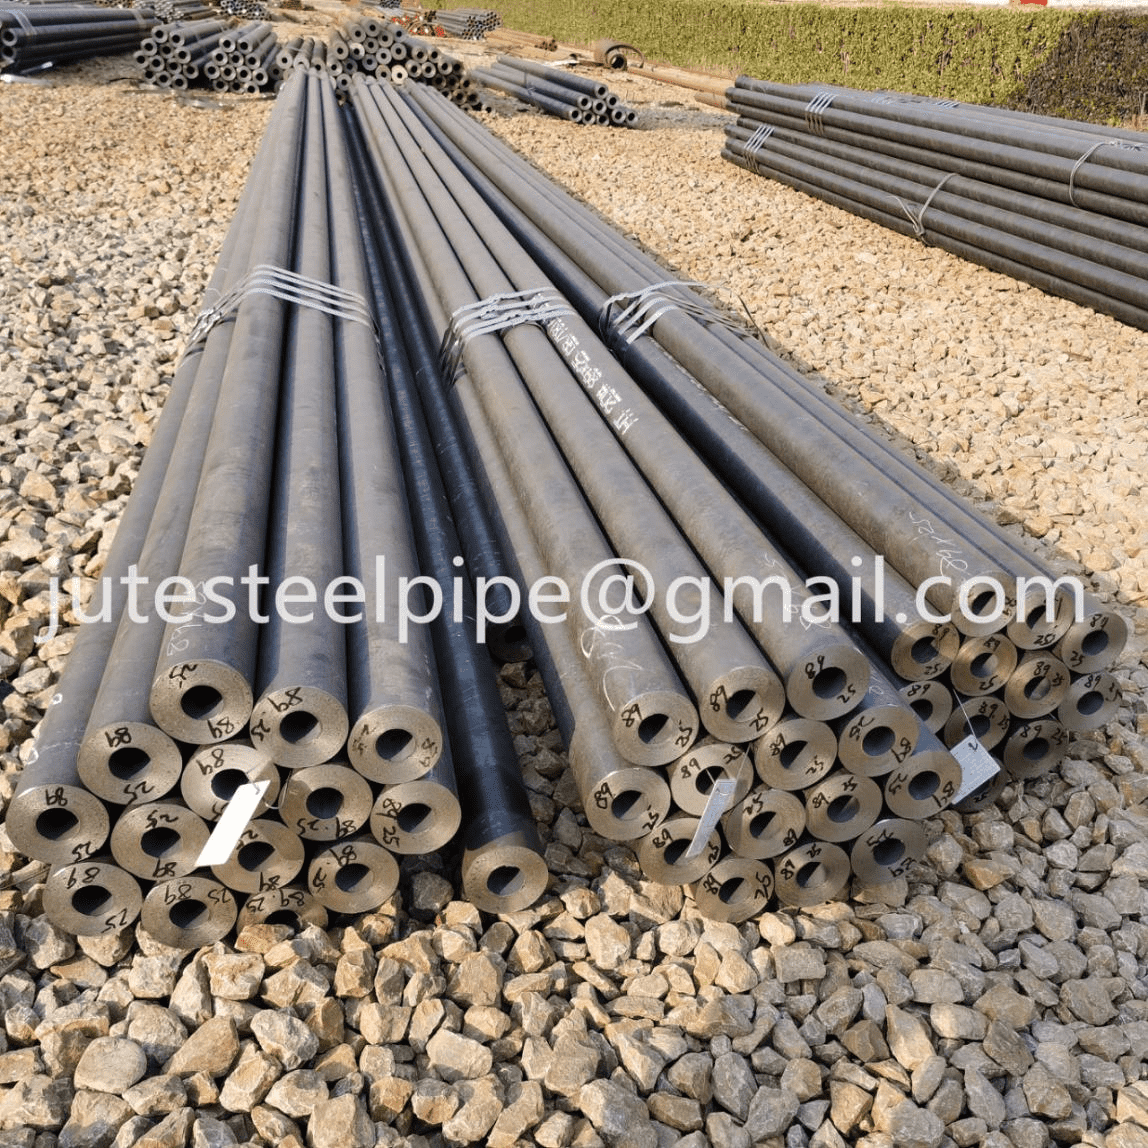 Ang seamless steel pipe kaylap nga gigamit sa matag proseso sa pagtukod